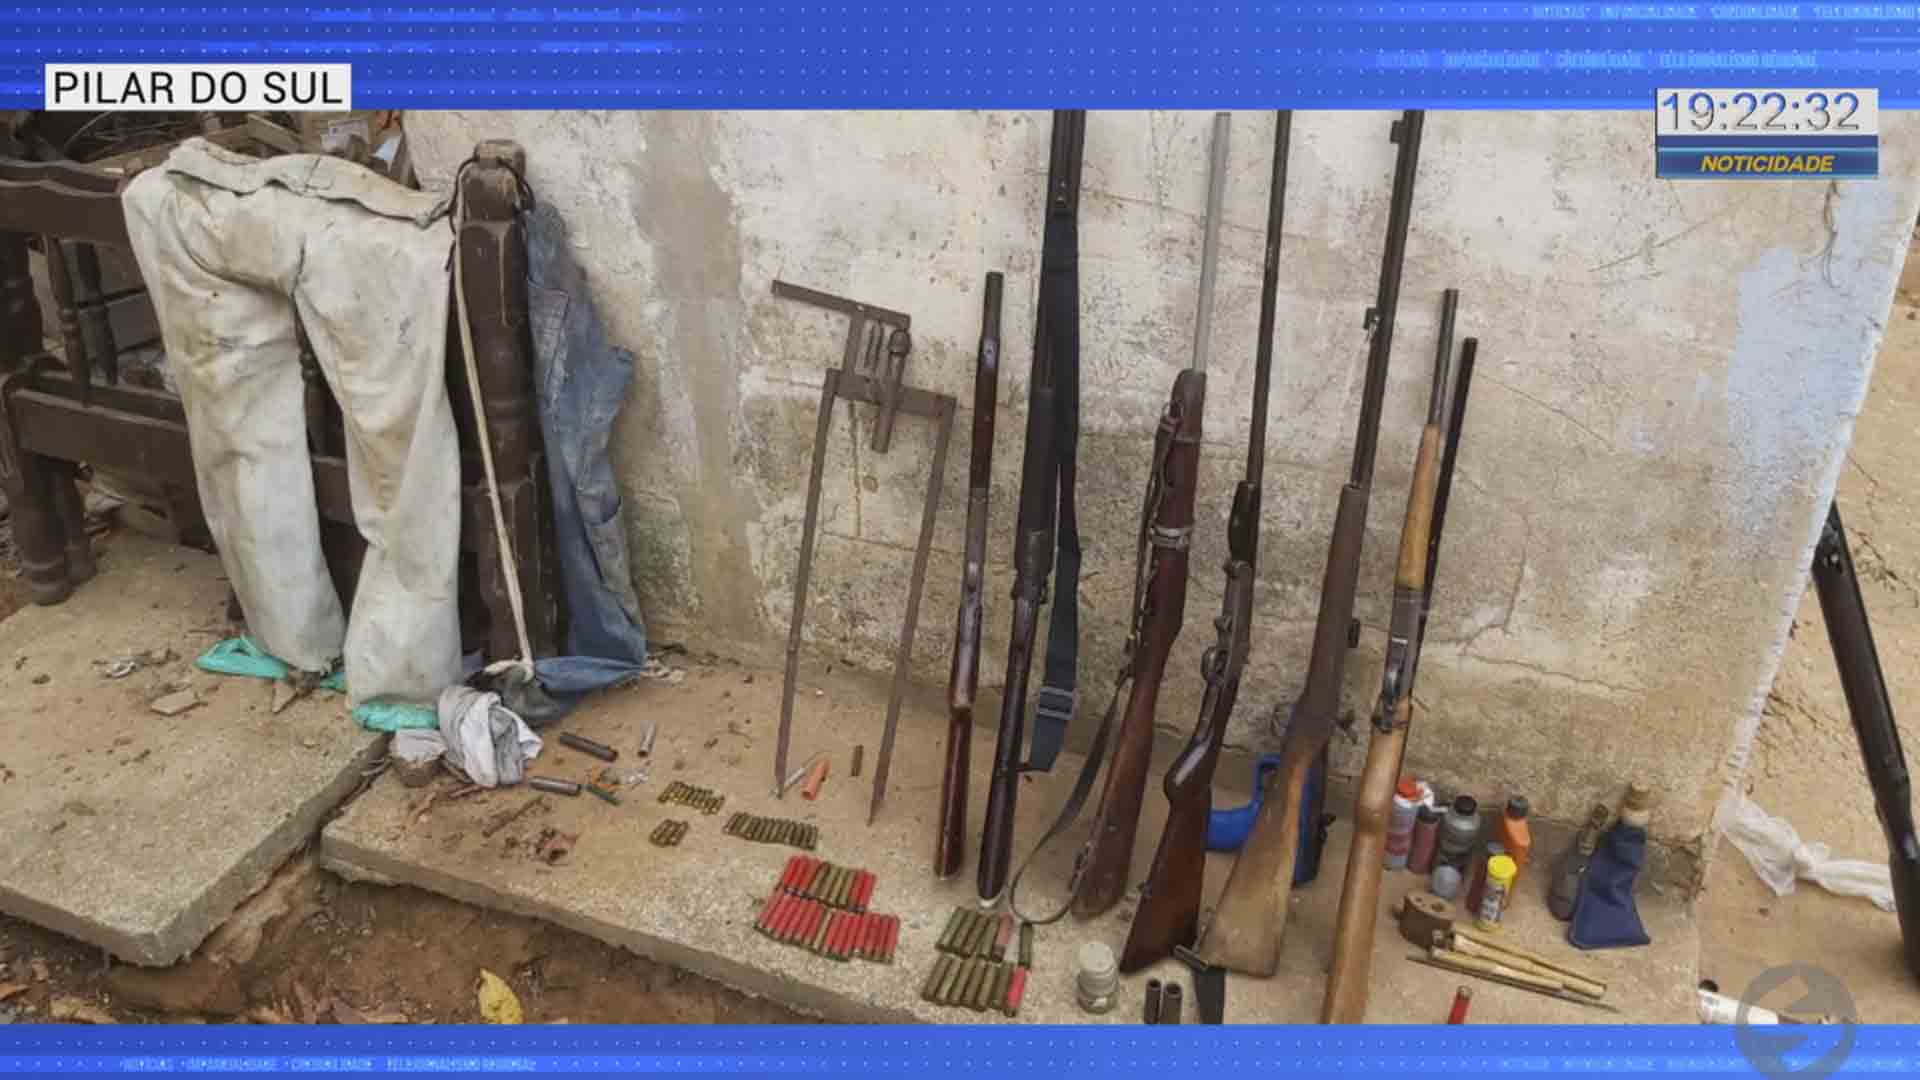 Armas são encontradas em Pilar do Sul